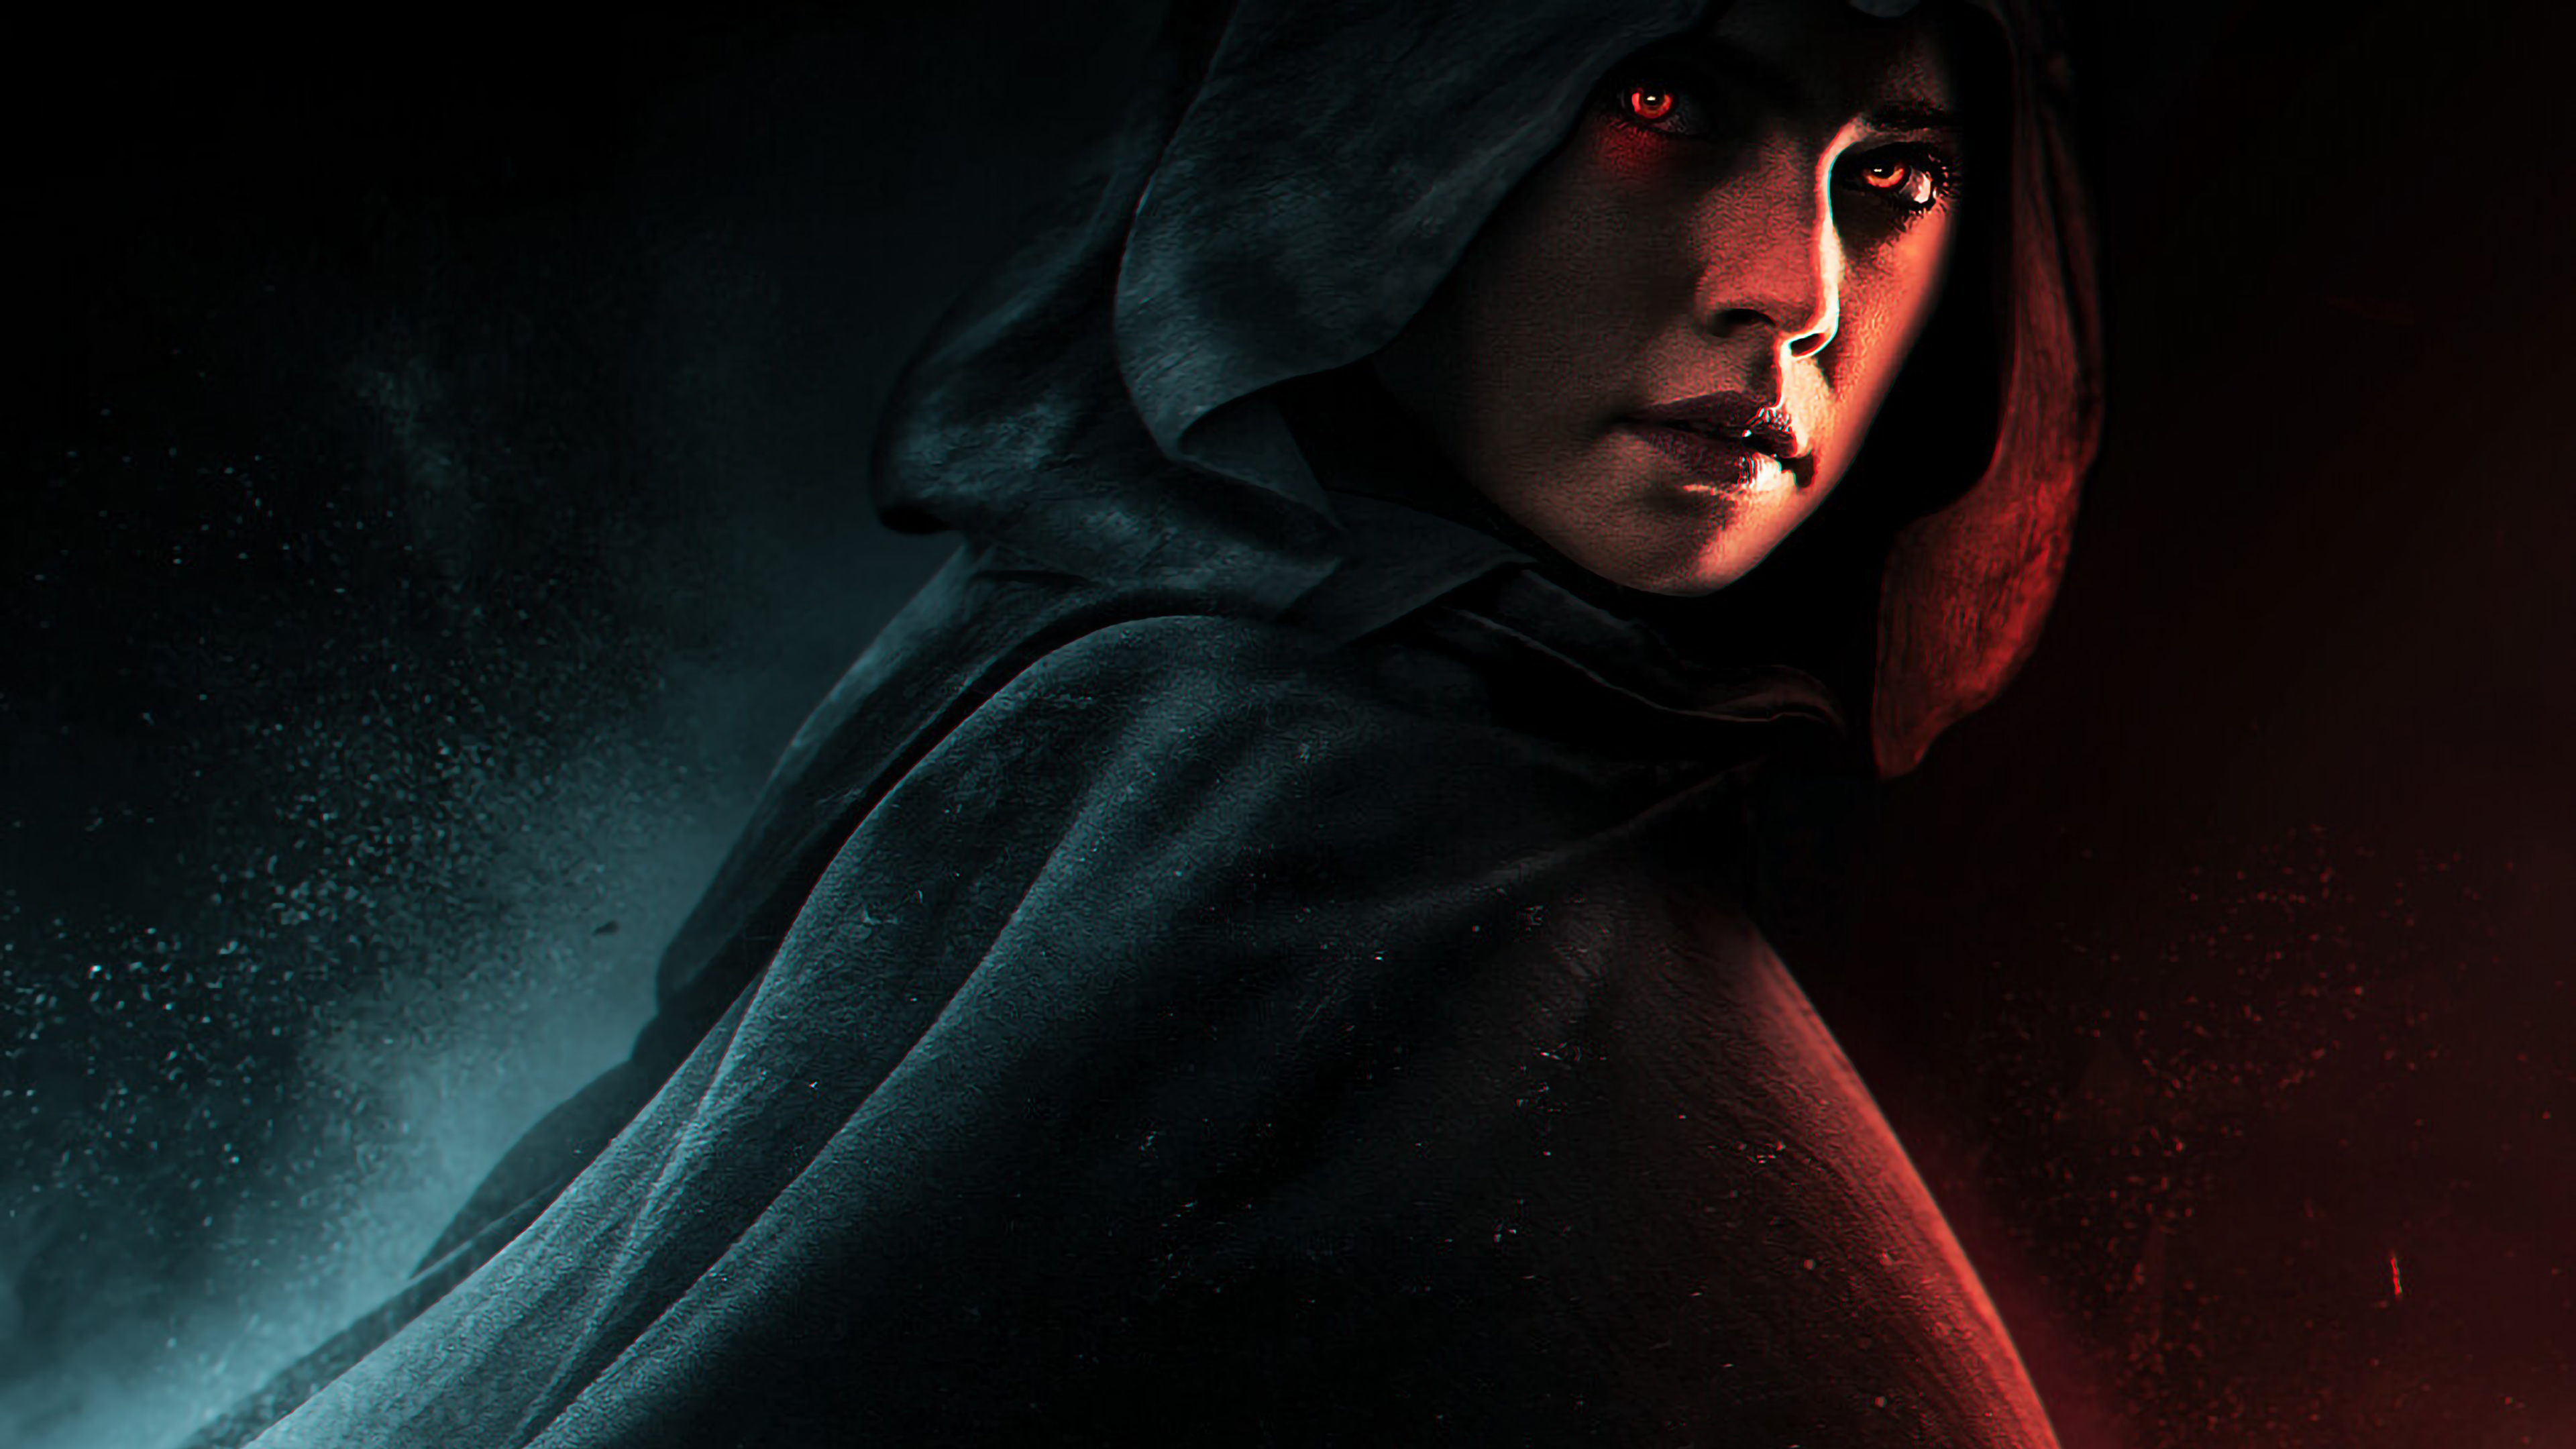 Rey Dark Side Rise Of Skywalker , HD Wallpaper & Backgrounds